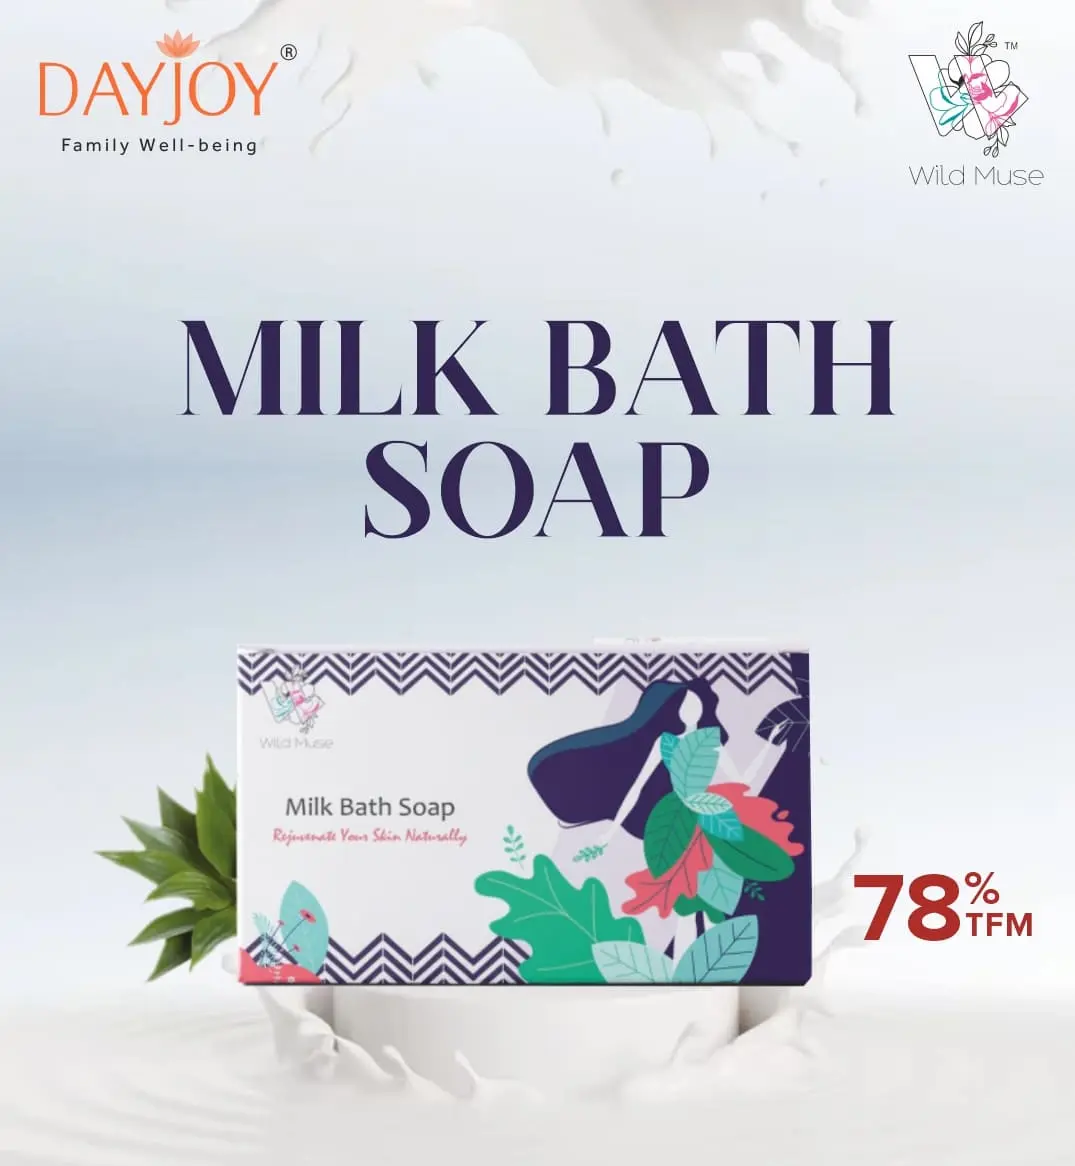 Milk bath soap (100g)